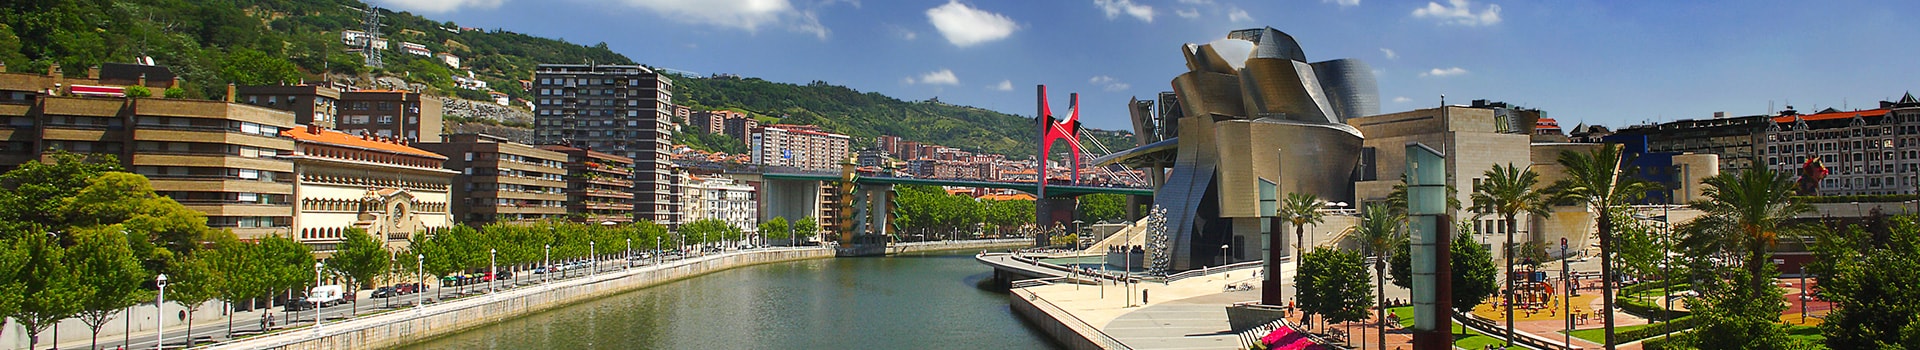 Porto - Bilbao